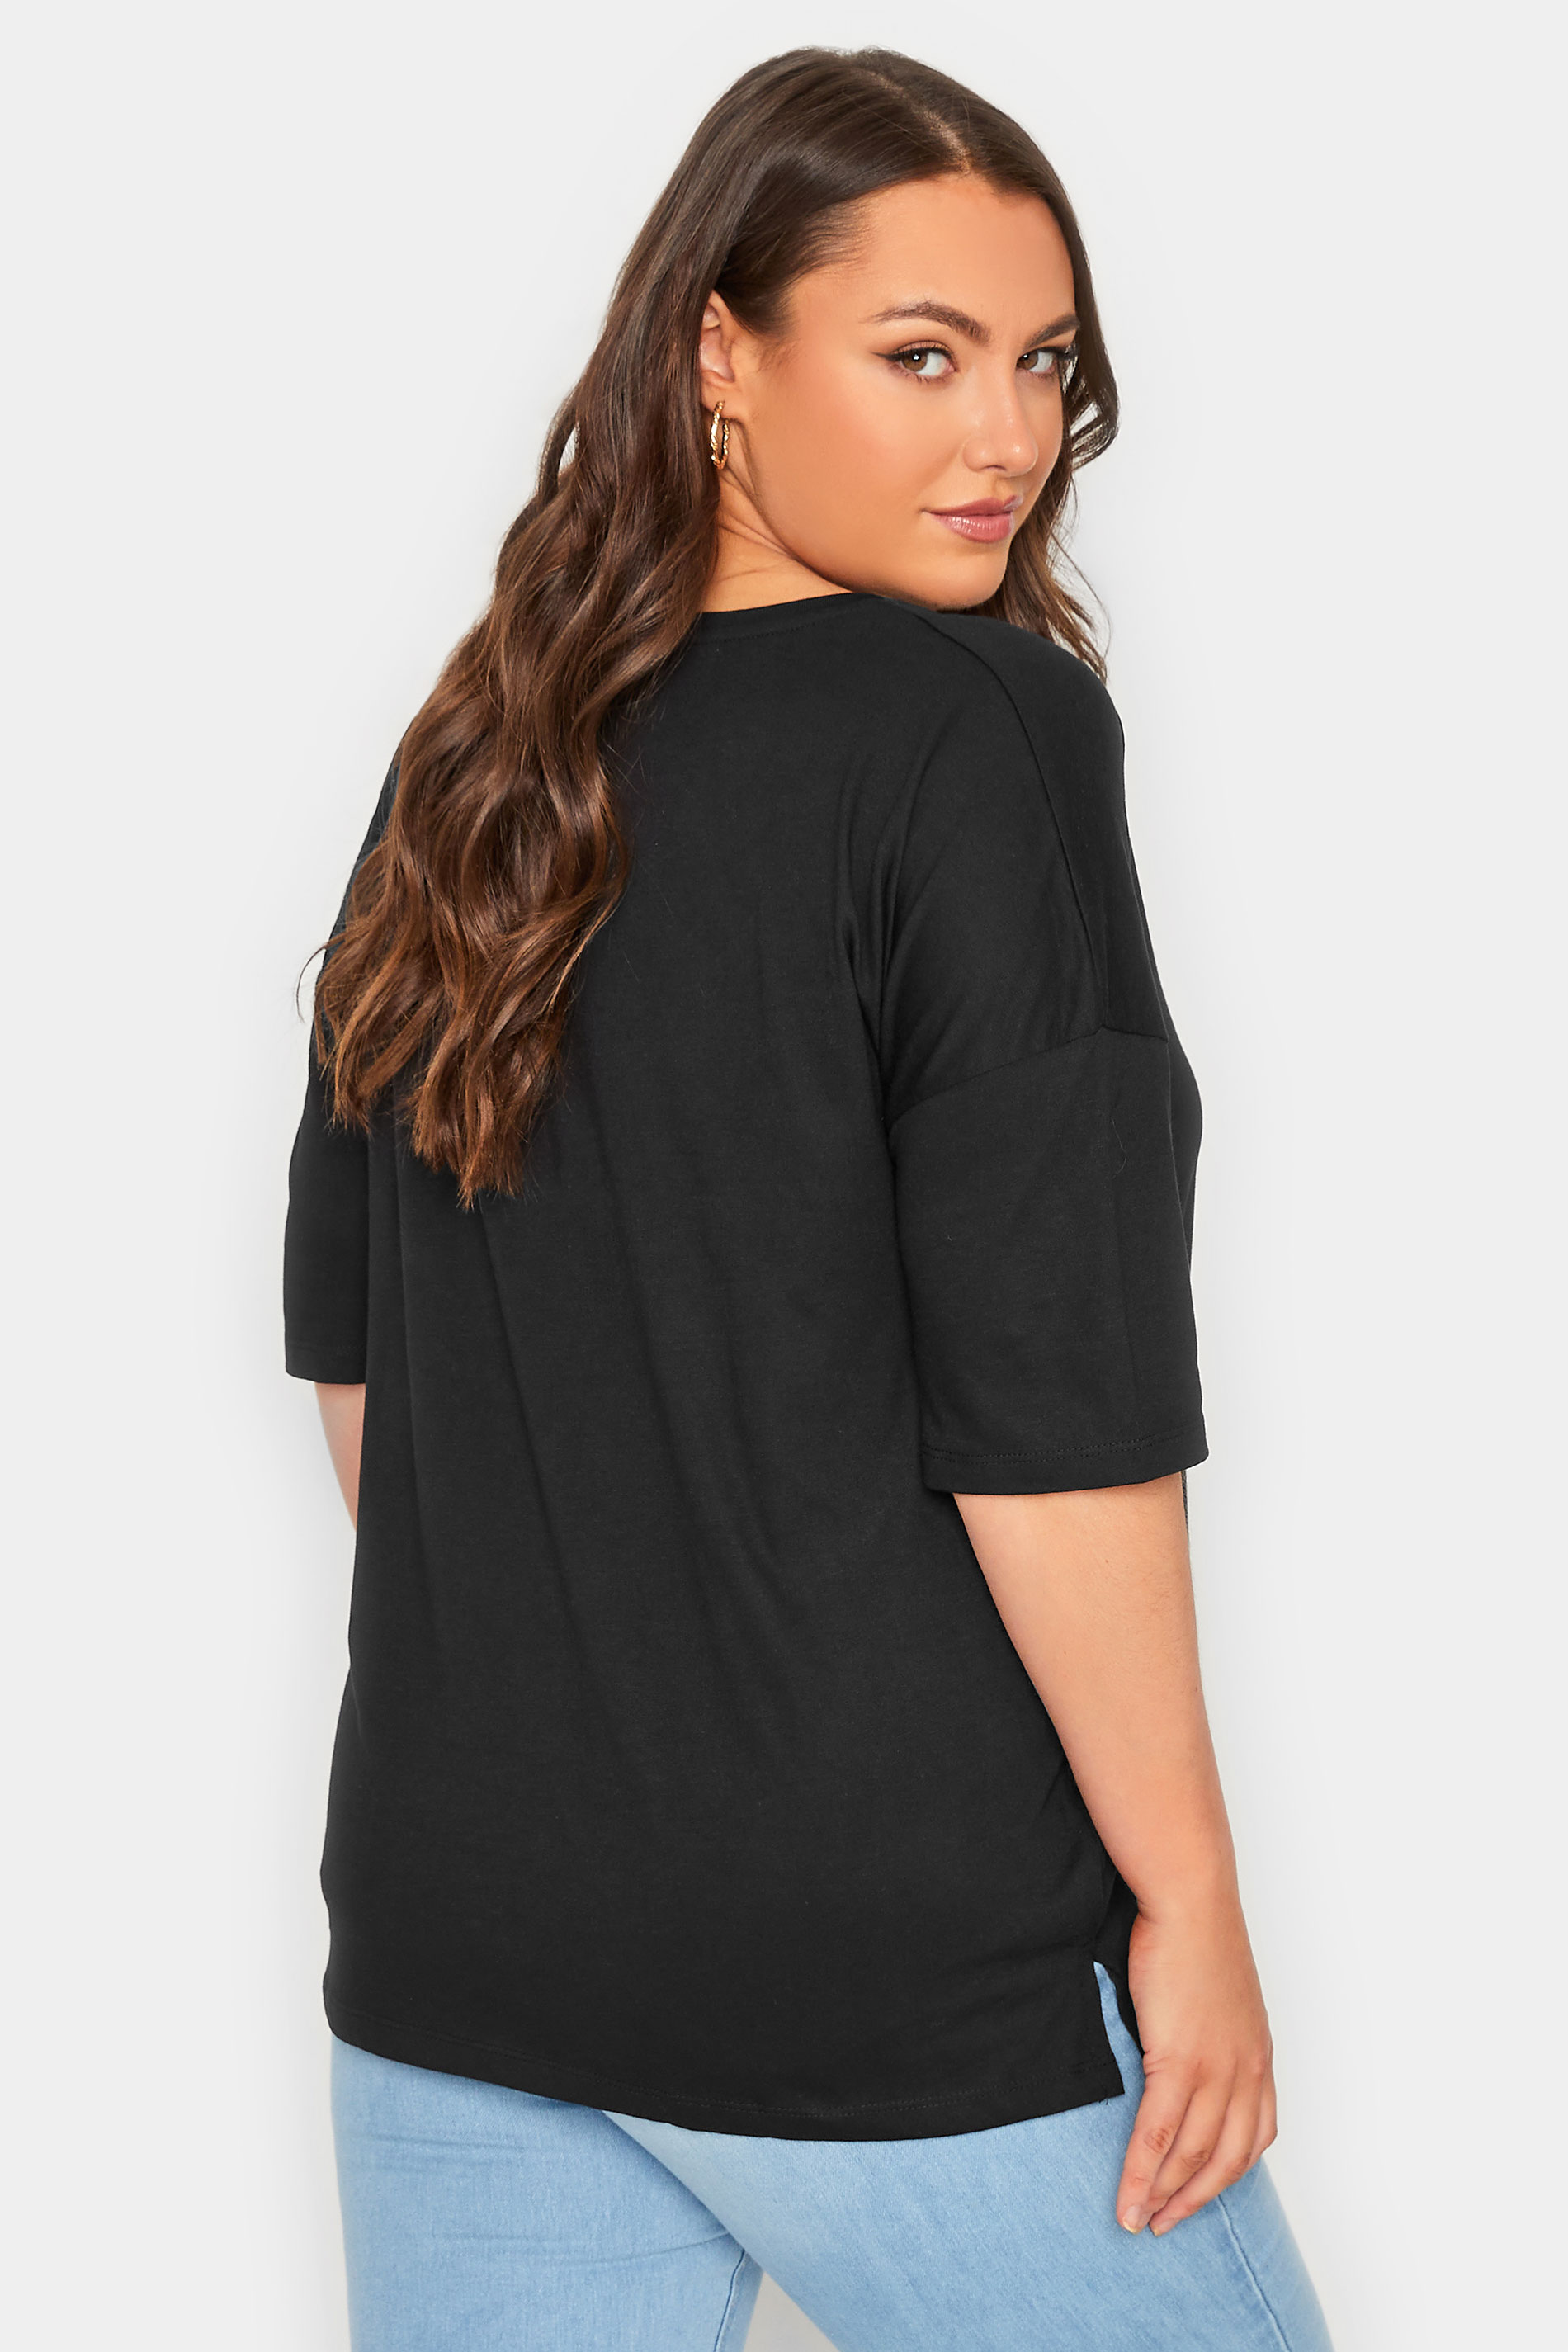 Plus Size Black V-Neck T-Shirt | Yours Clothing  3